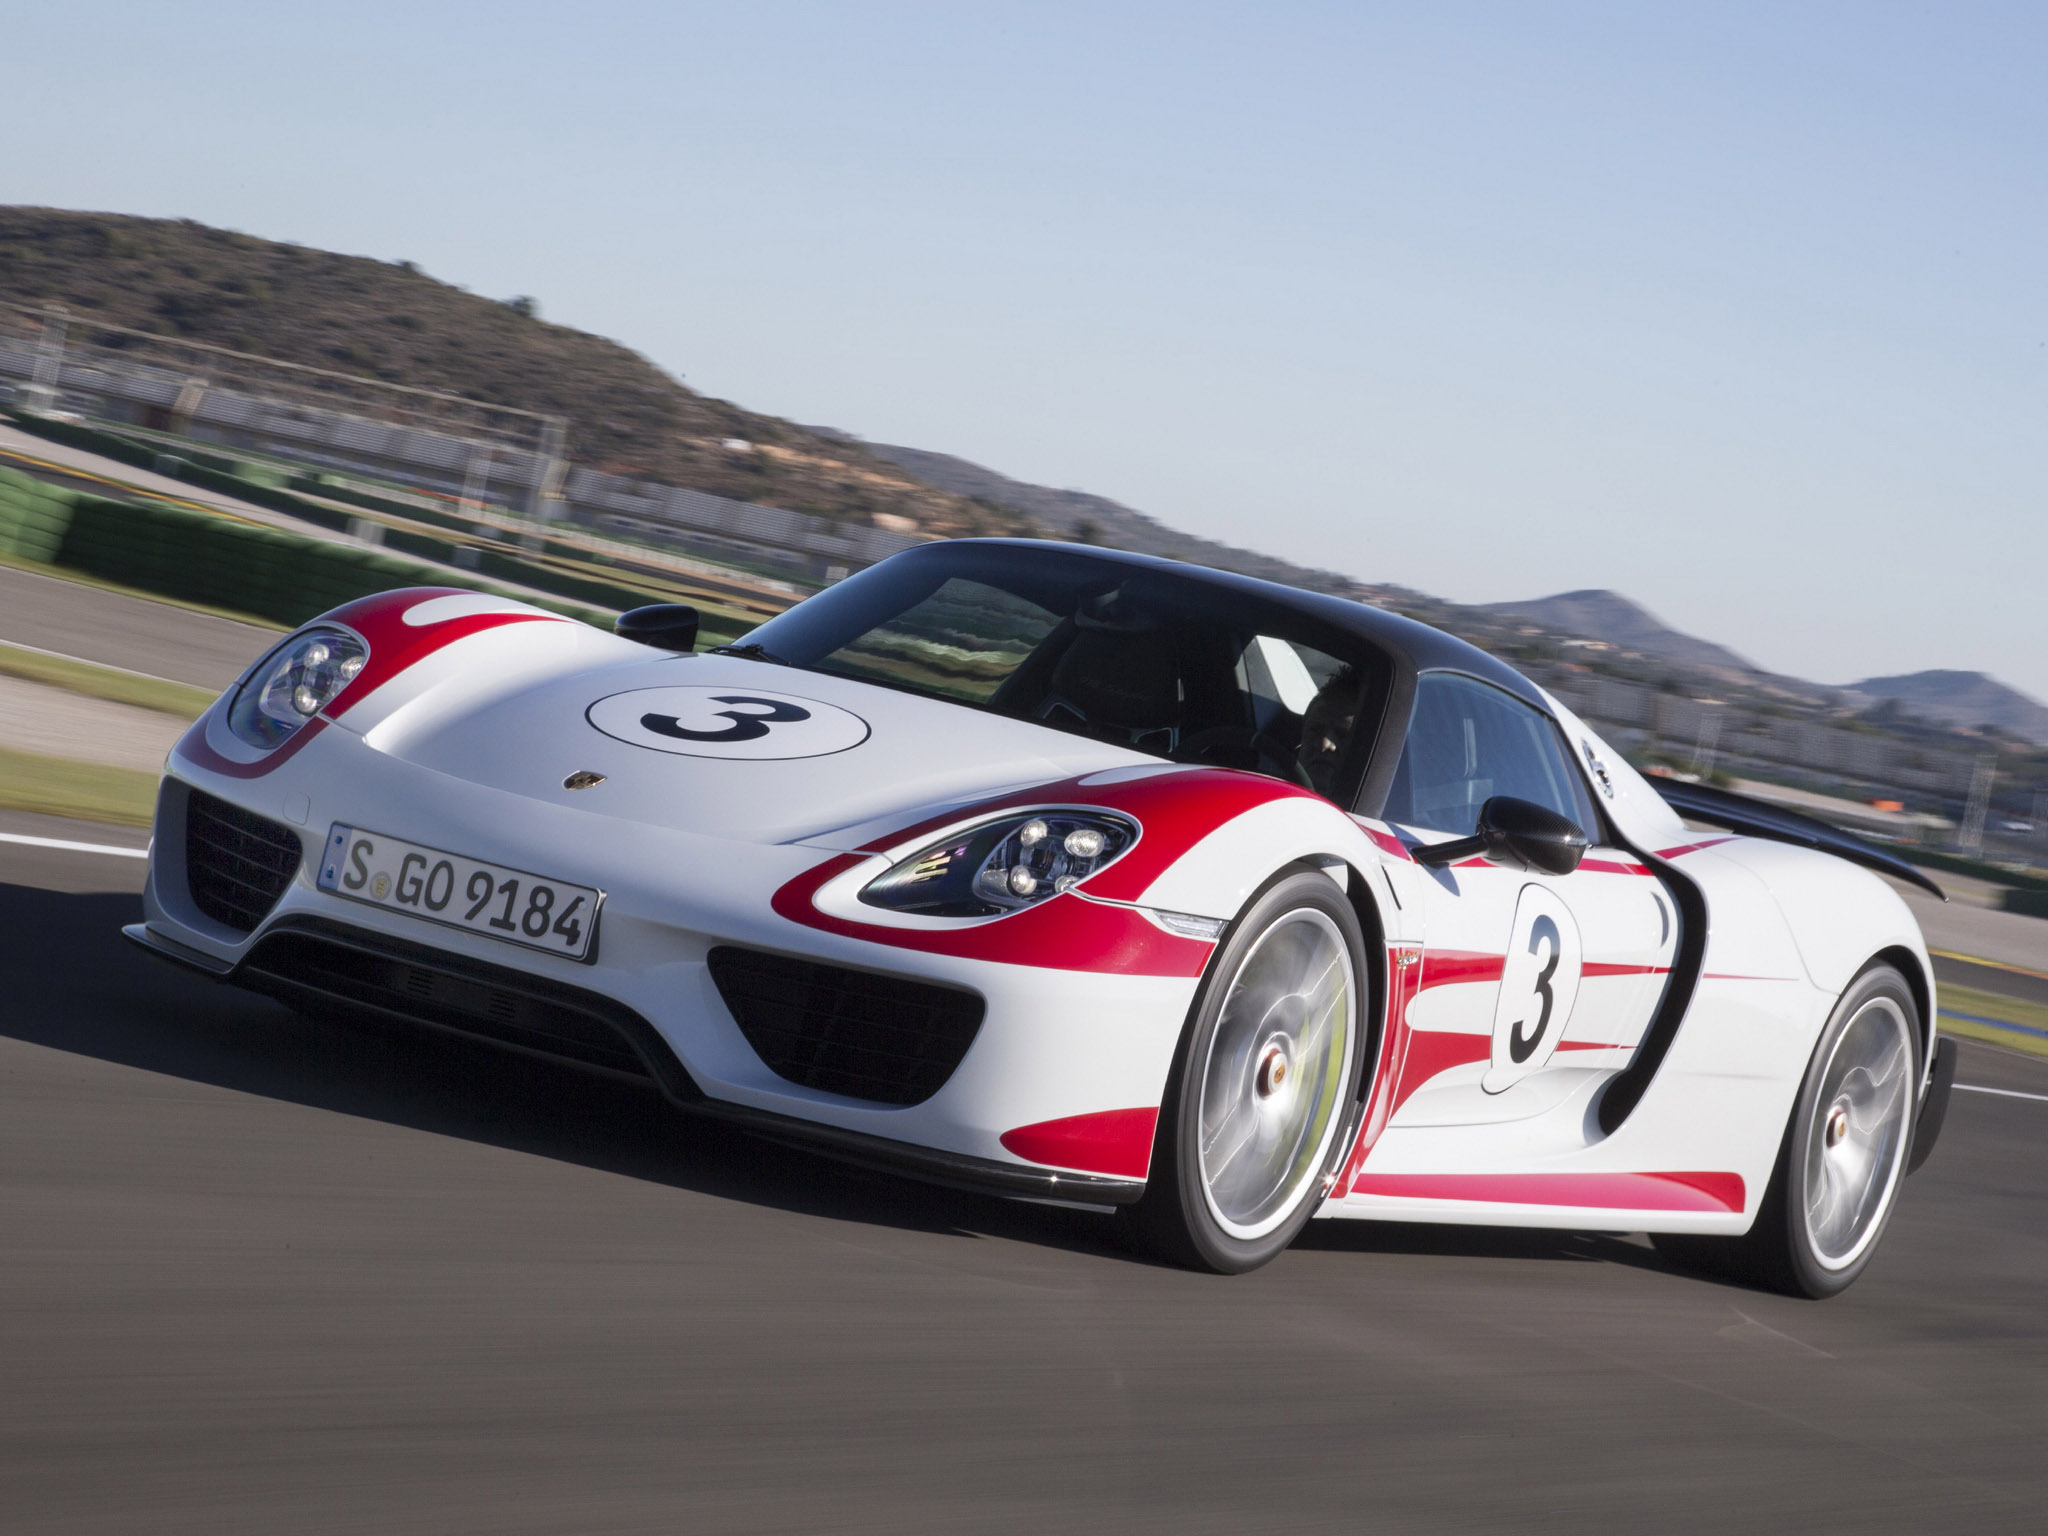 2014, Porsche, 918, Spyder, Weissach, Race, Racing, Supercar, Dg Wallpaper